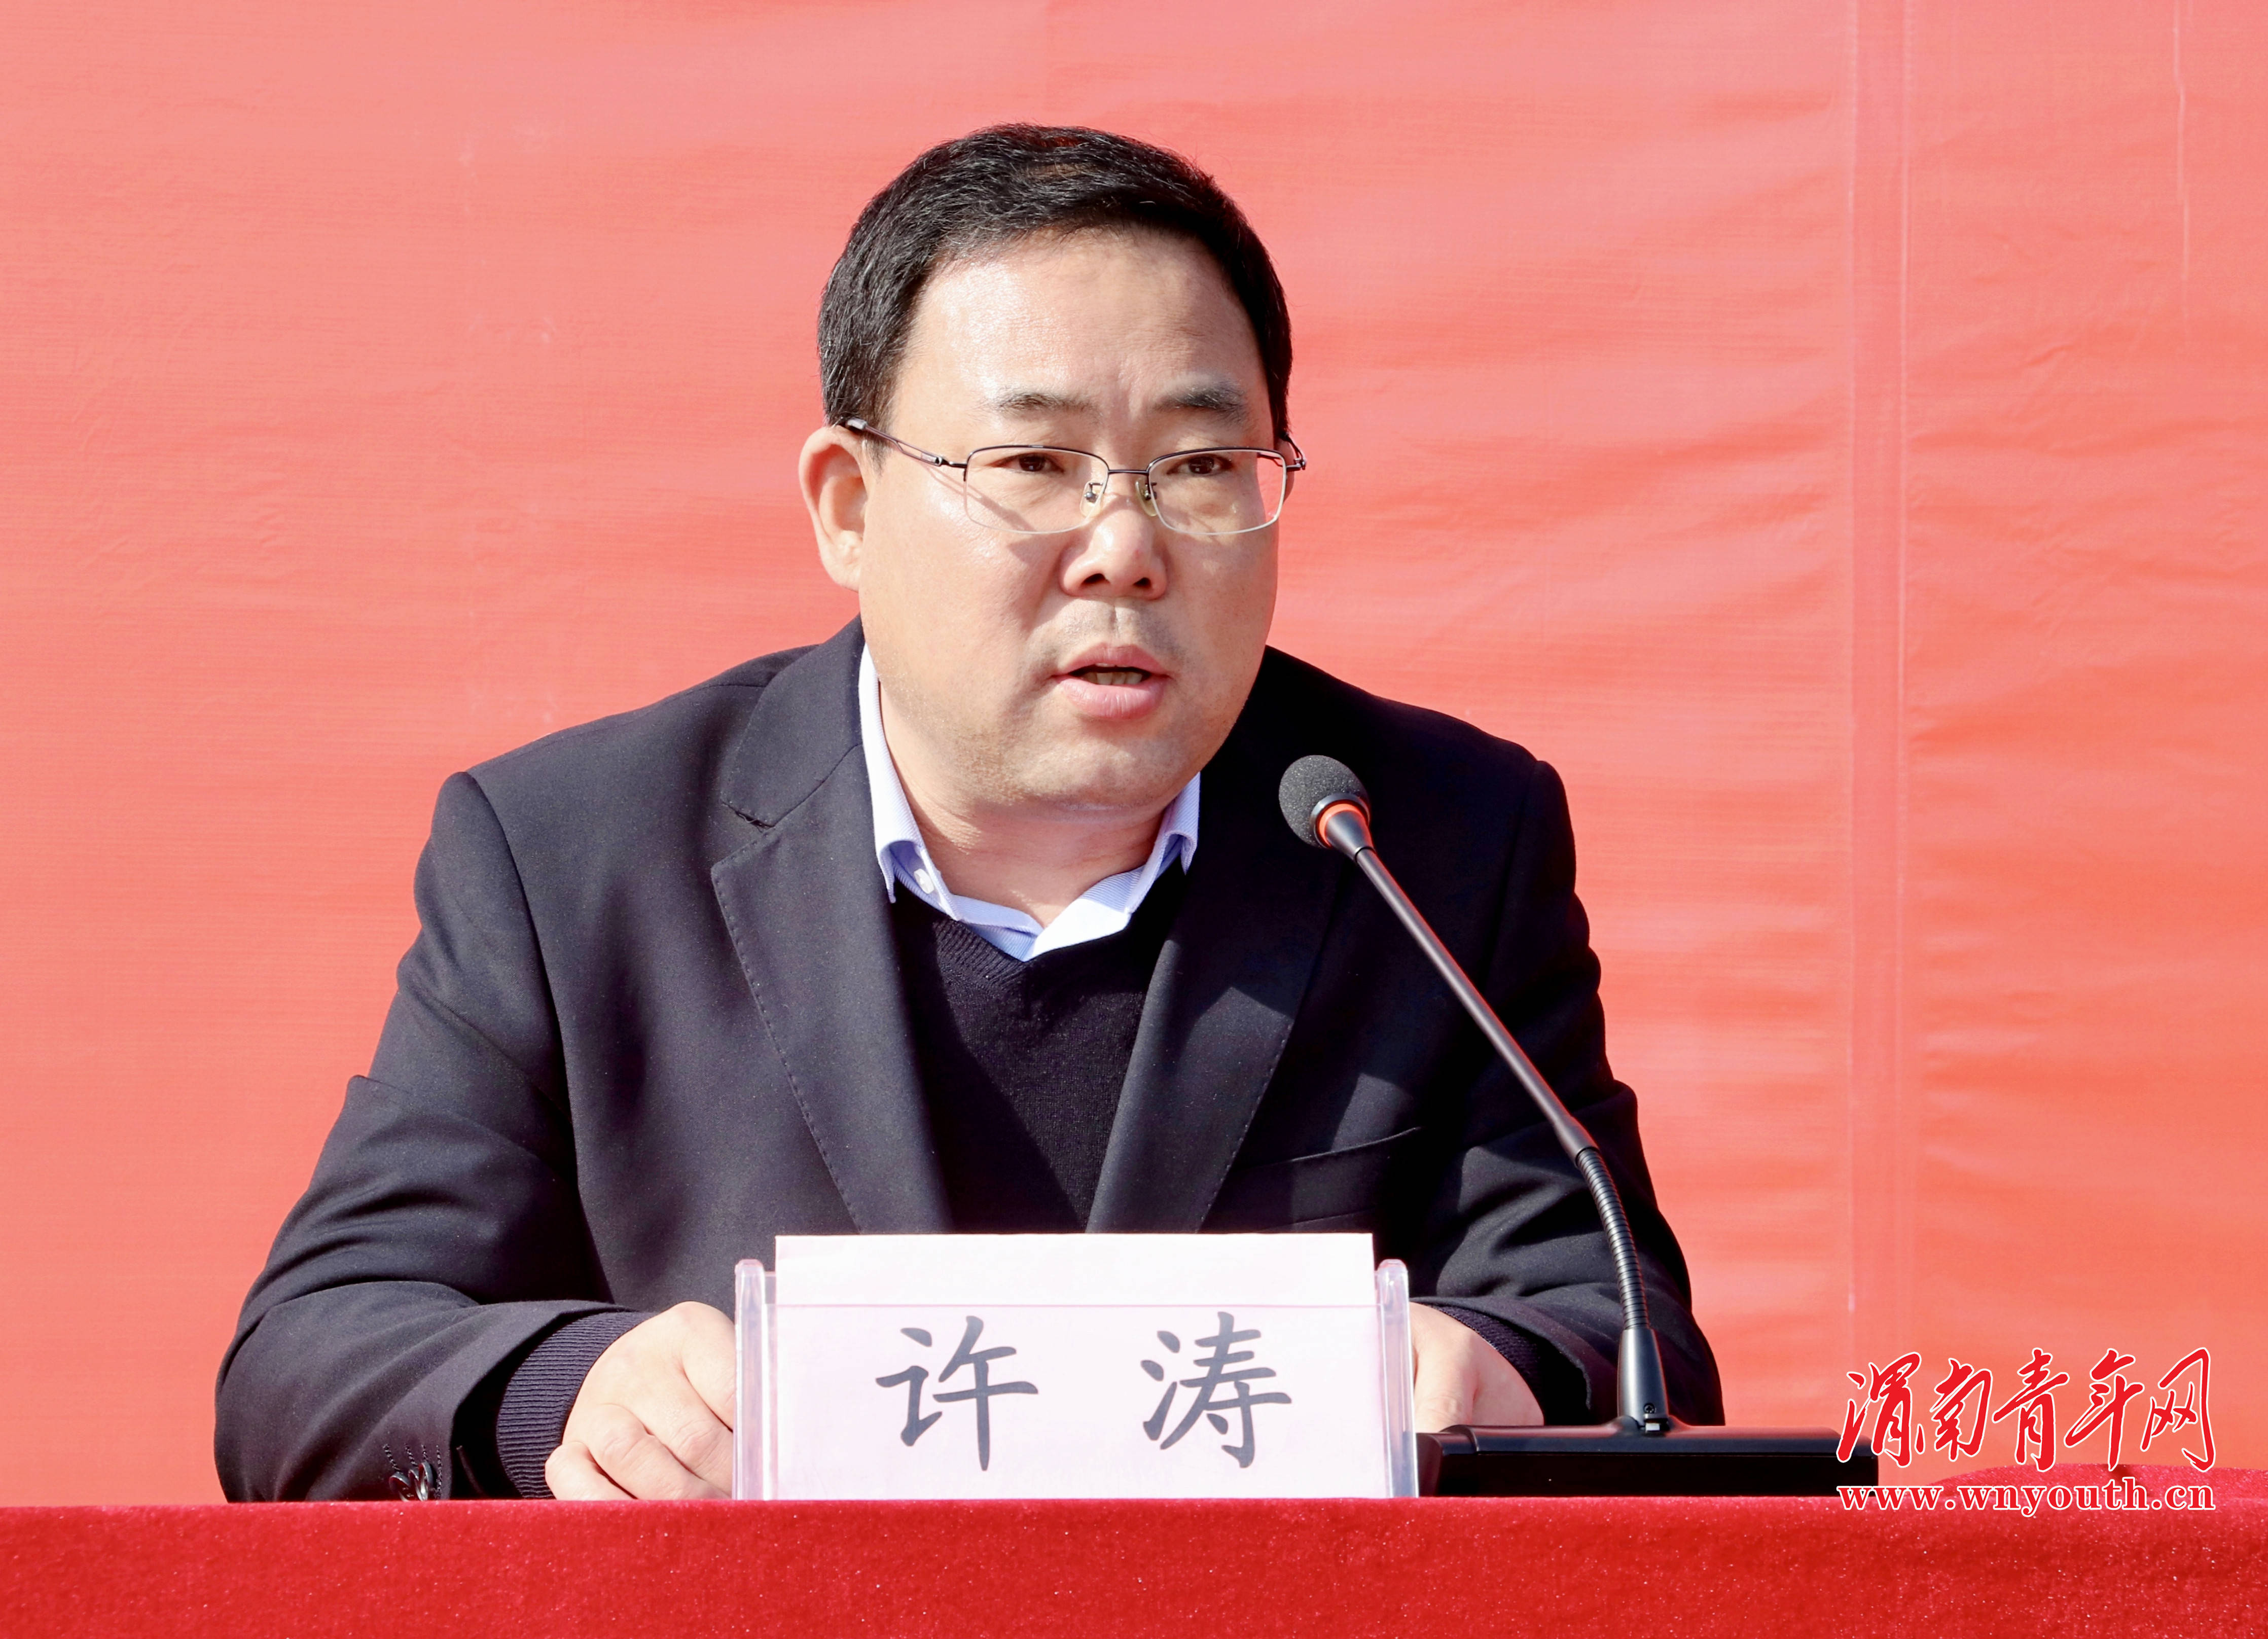 合阳县副县长,扶贫办主任许涛在回答记者关于合阳在脱贫攻坚方面取得